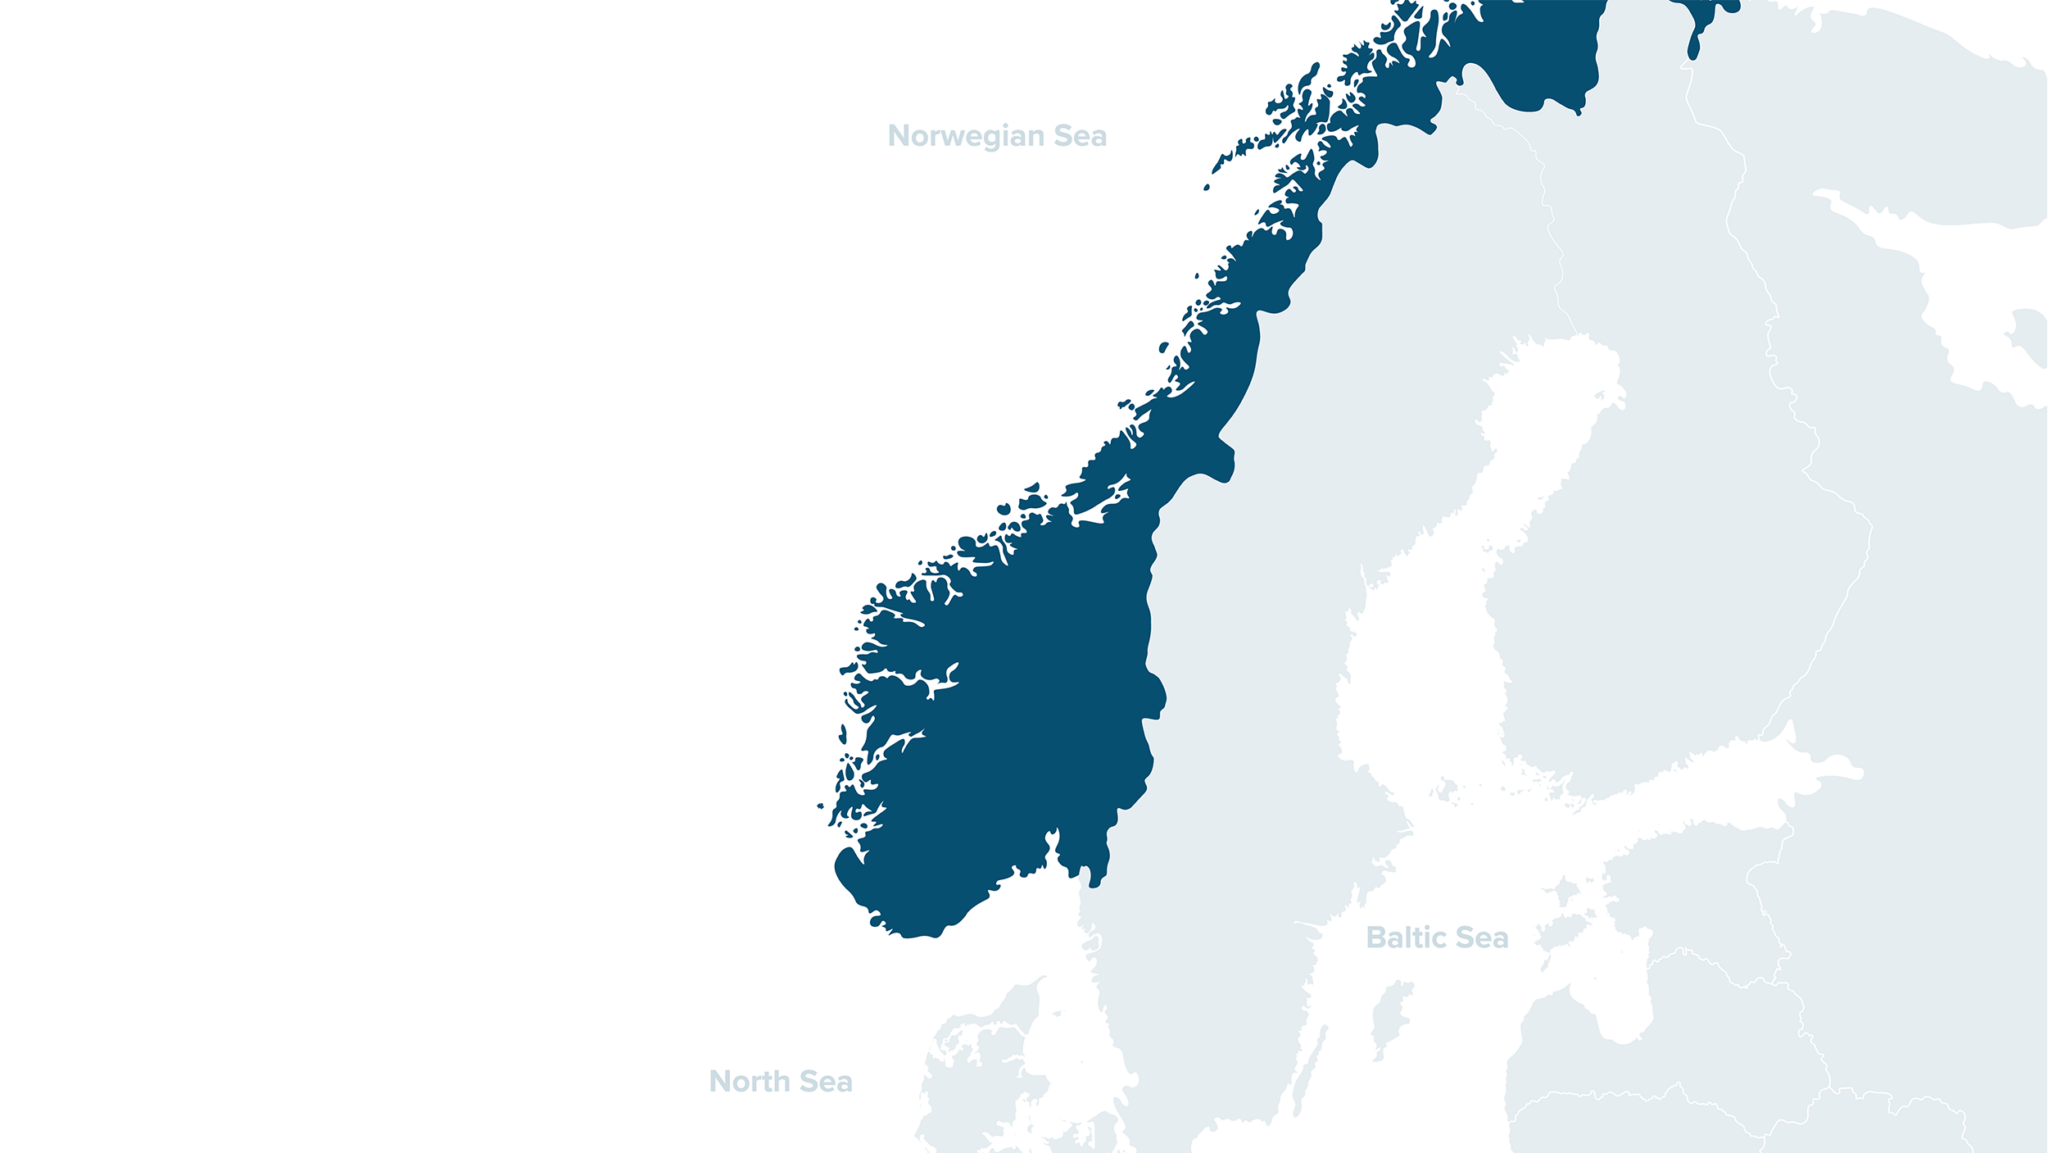 Skjoldblad Projects Map